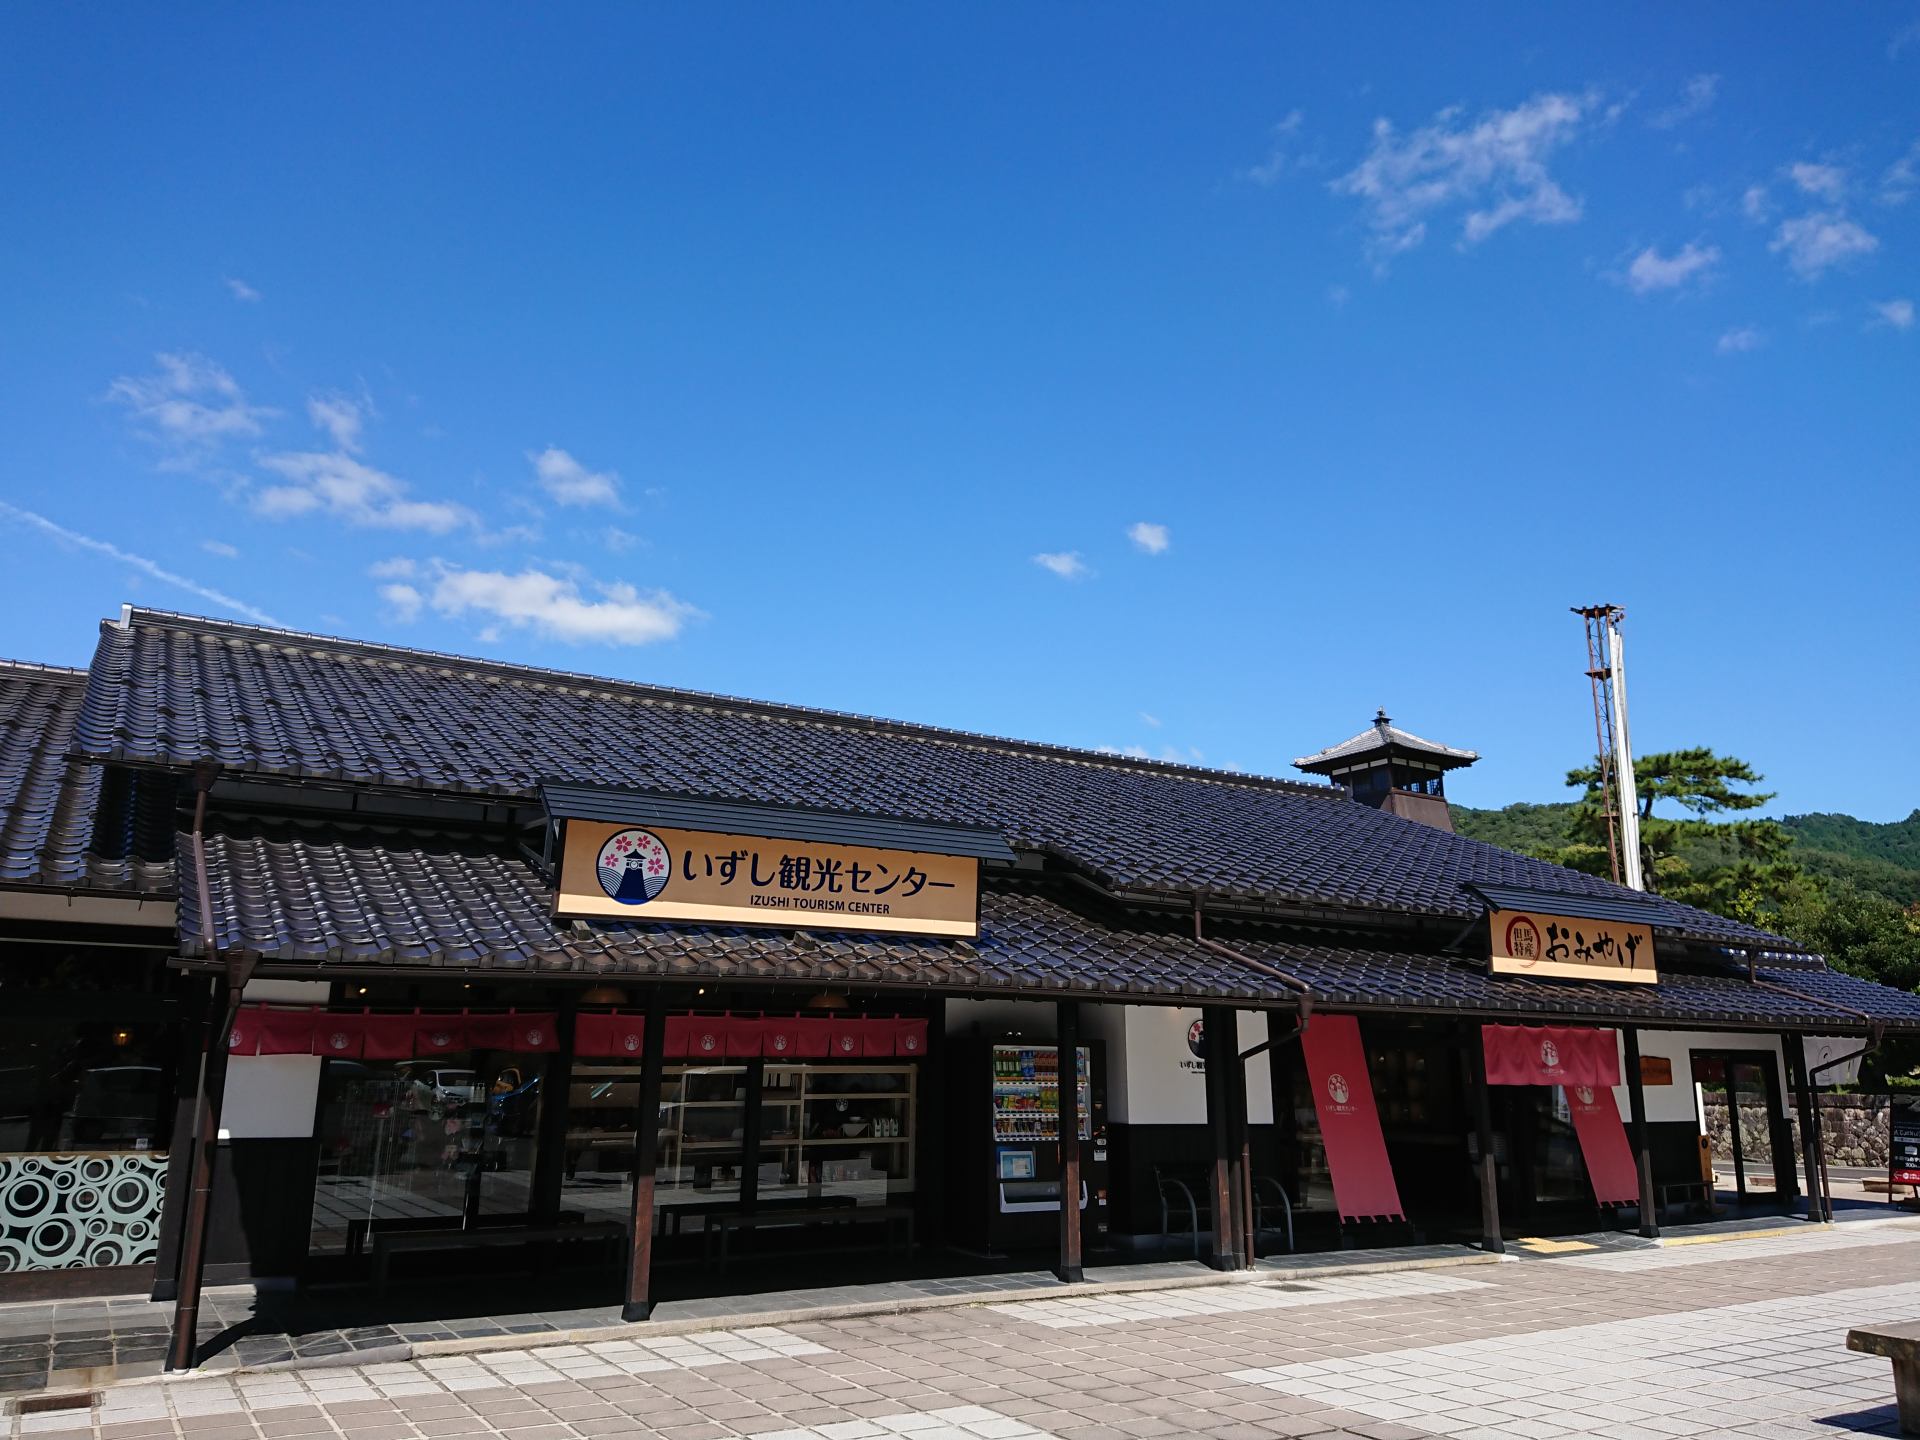 Pasa por el Centro Turístico de Izushi antes de partir. No solo se ofrece información turística, sino también fideos soba y locales.